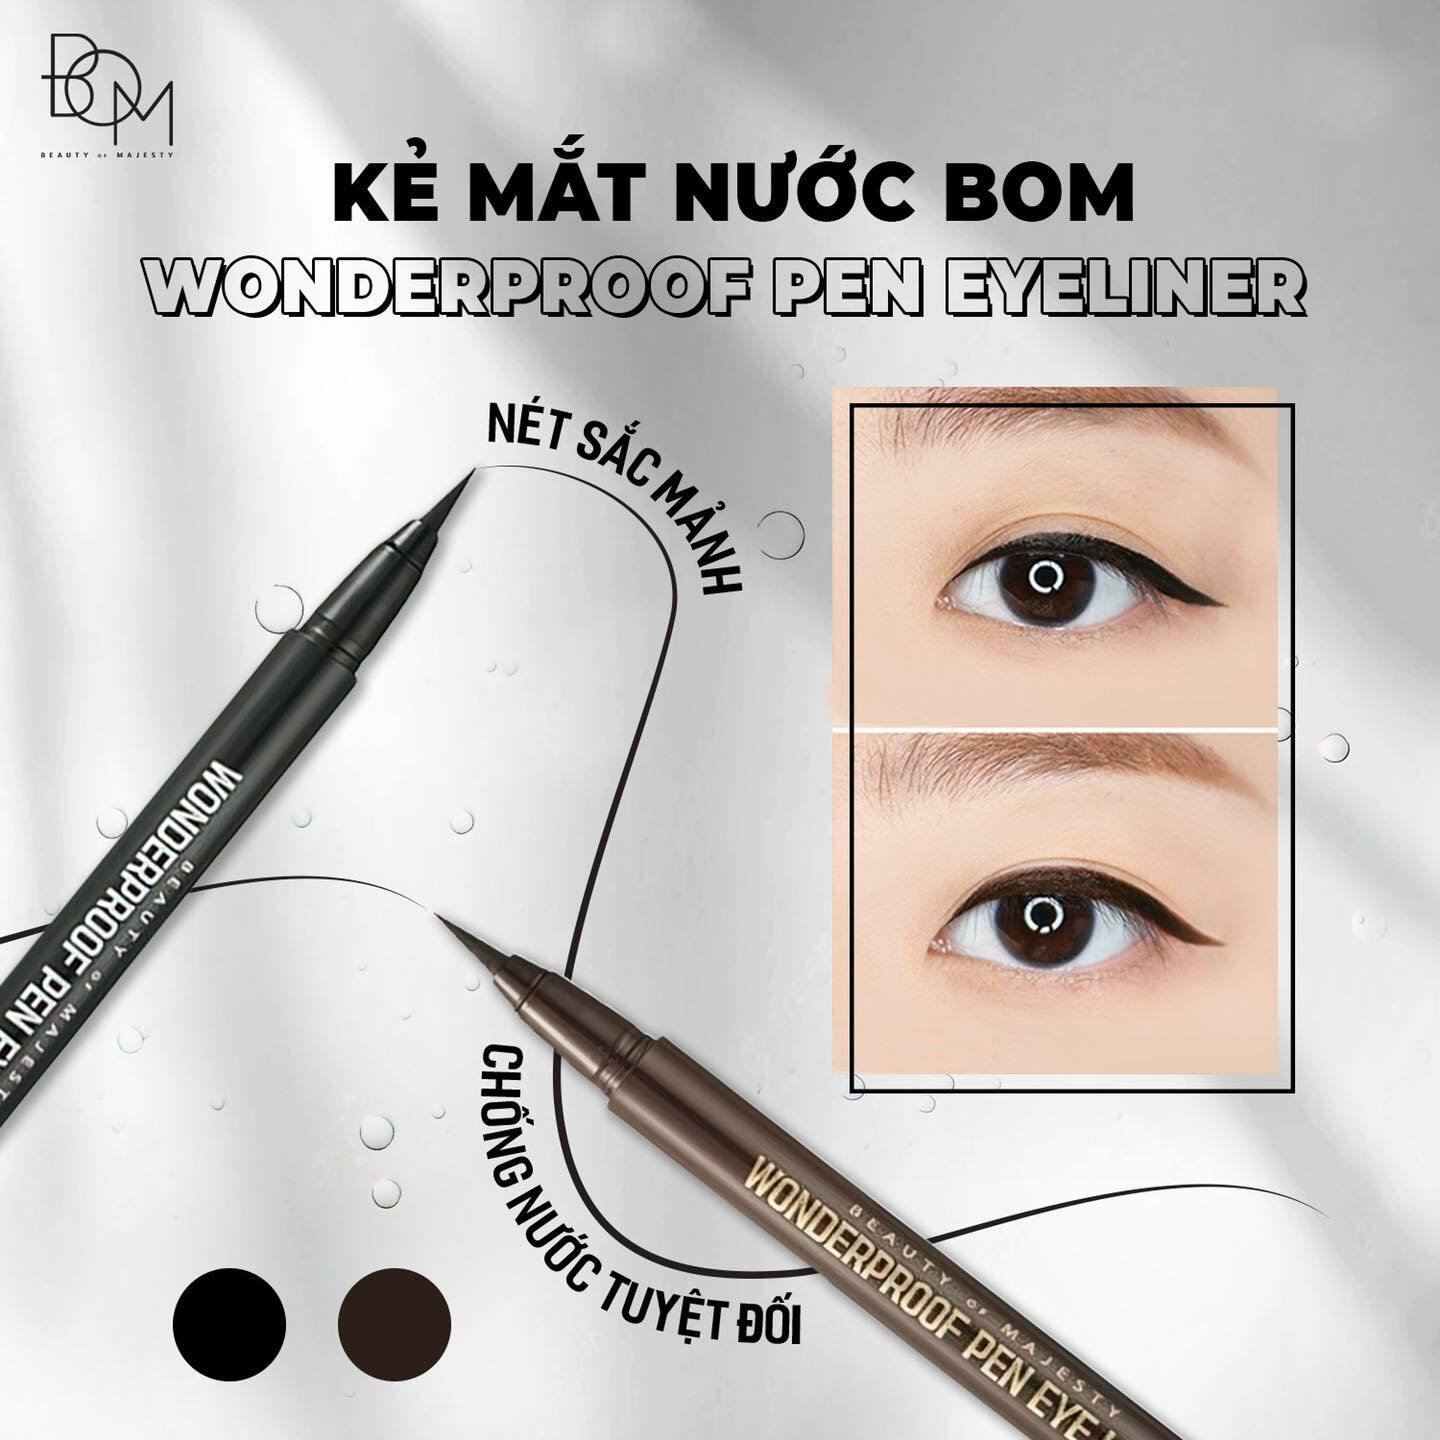 Kẻ mắt eyeliner B.O.M với đầu bút thanh mảnh và những đường kẻ mềm mại; đang là sản phẩm rất được săn đón trên thị trường hiện nay.